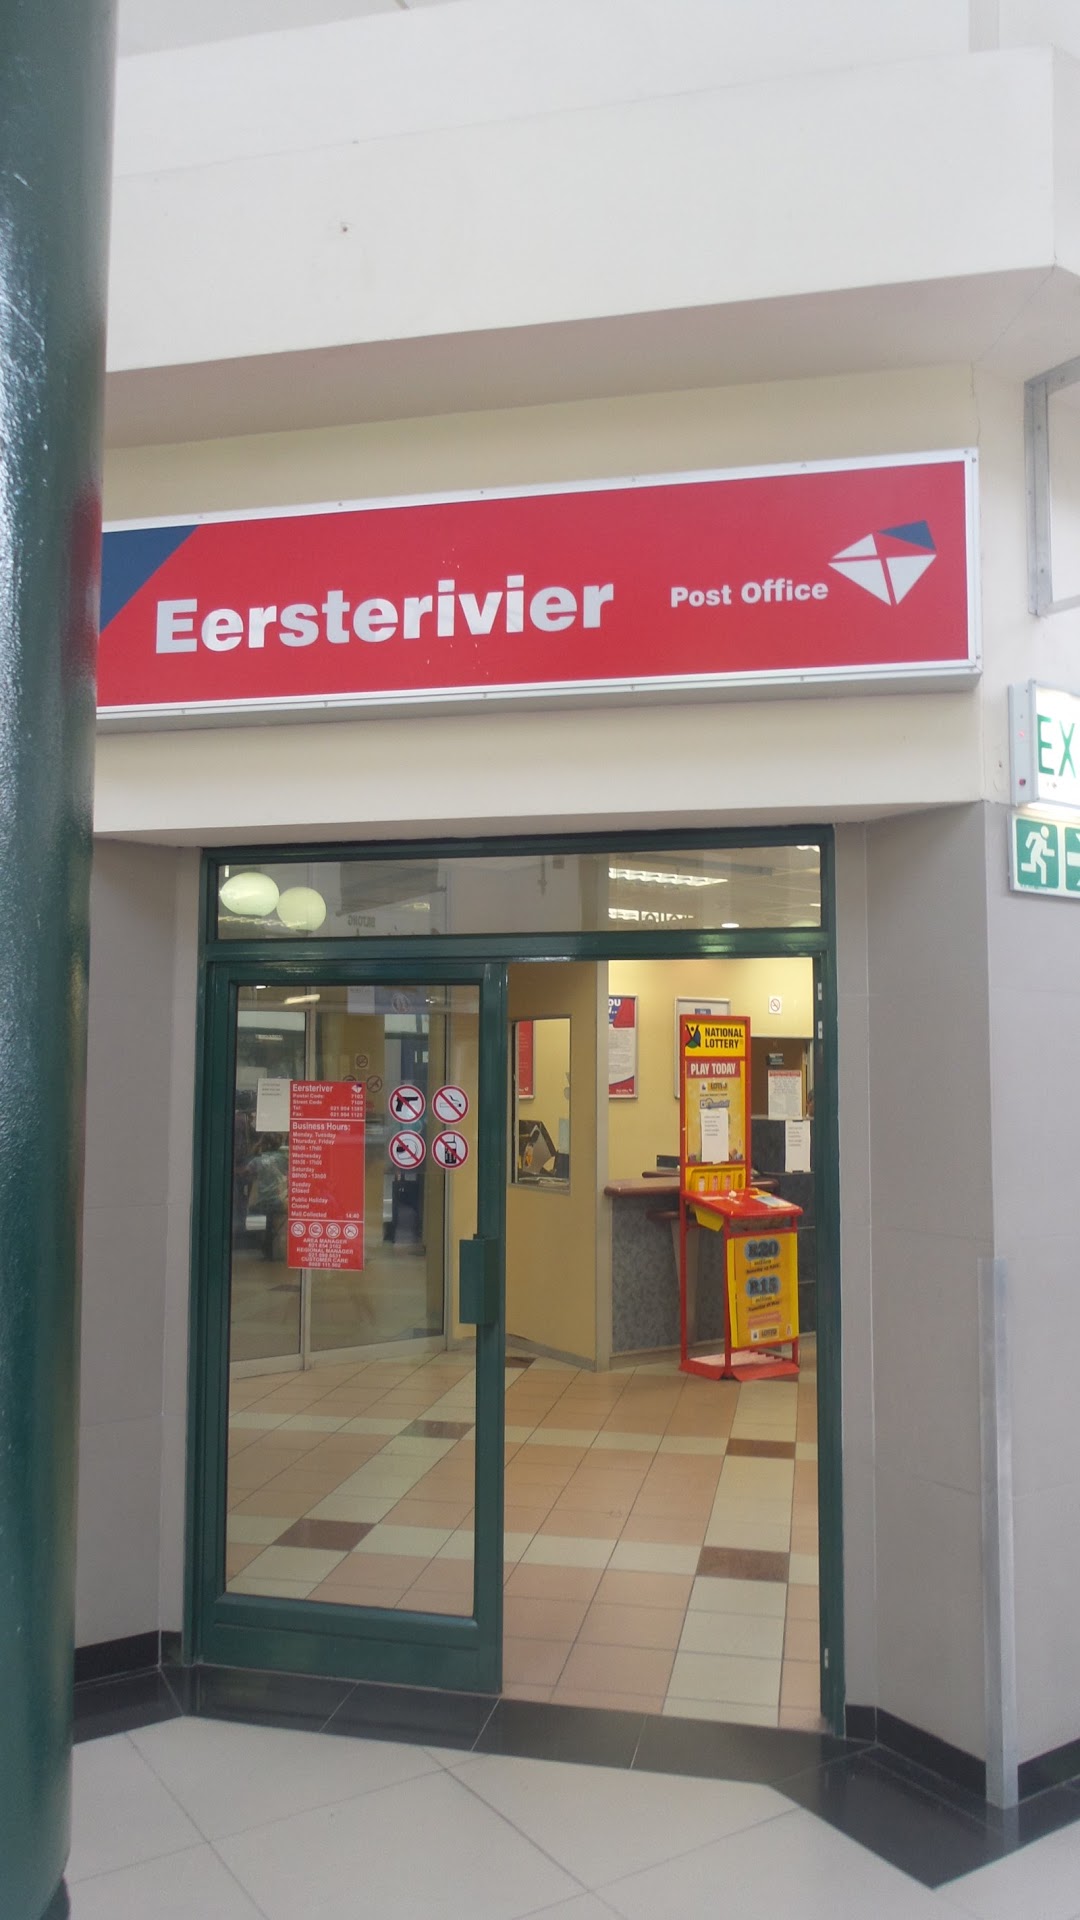 Eersterivier Post Office